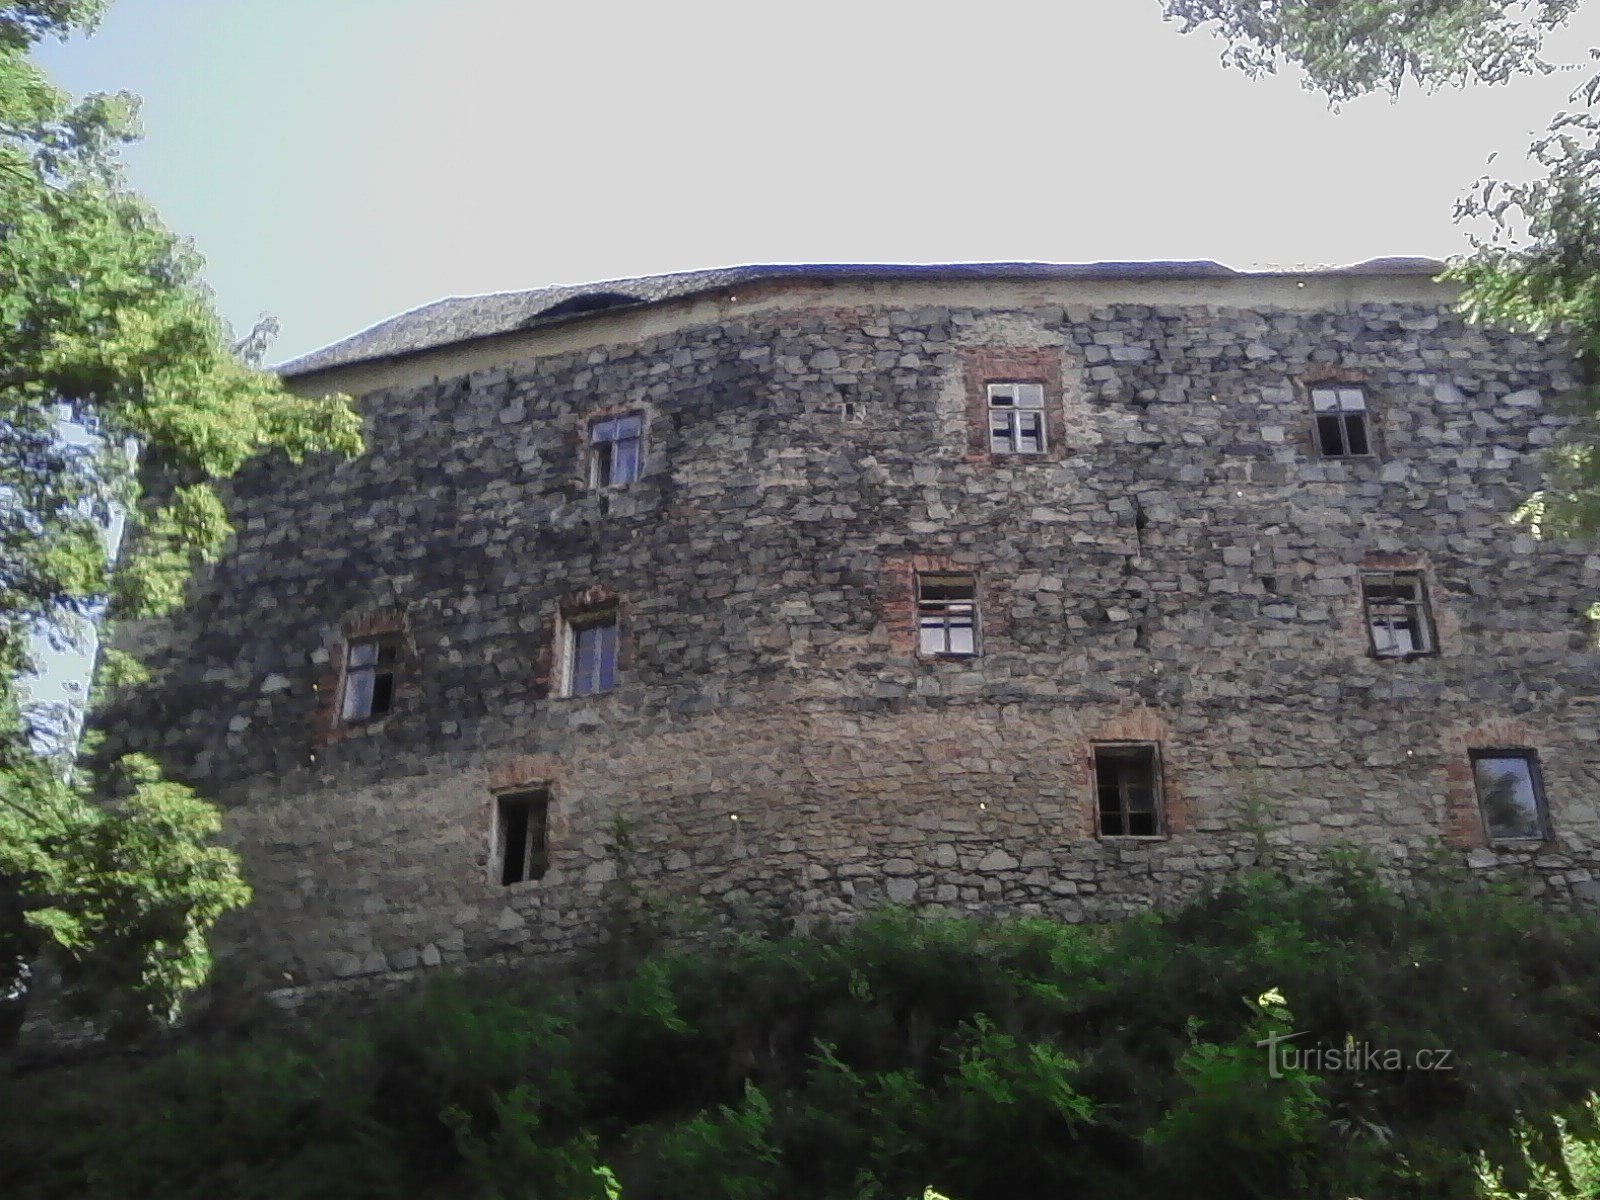 1. Φρούριο σύννεφων. Μεσαιωνικό φρούριο του 14ου αιώνα. με ανακτορικές οχυρώσεις, στέκεται σε λόφο